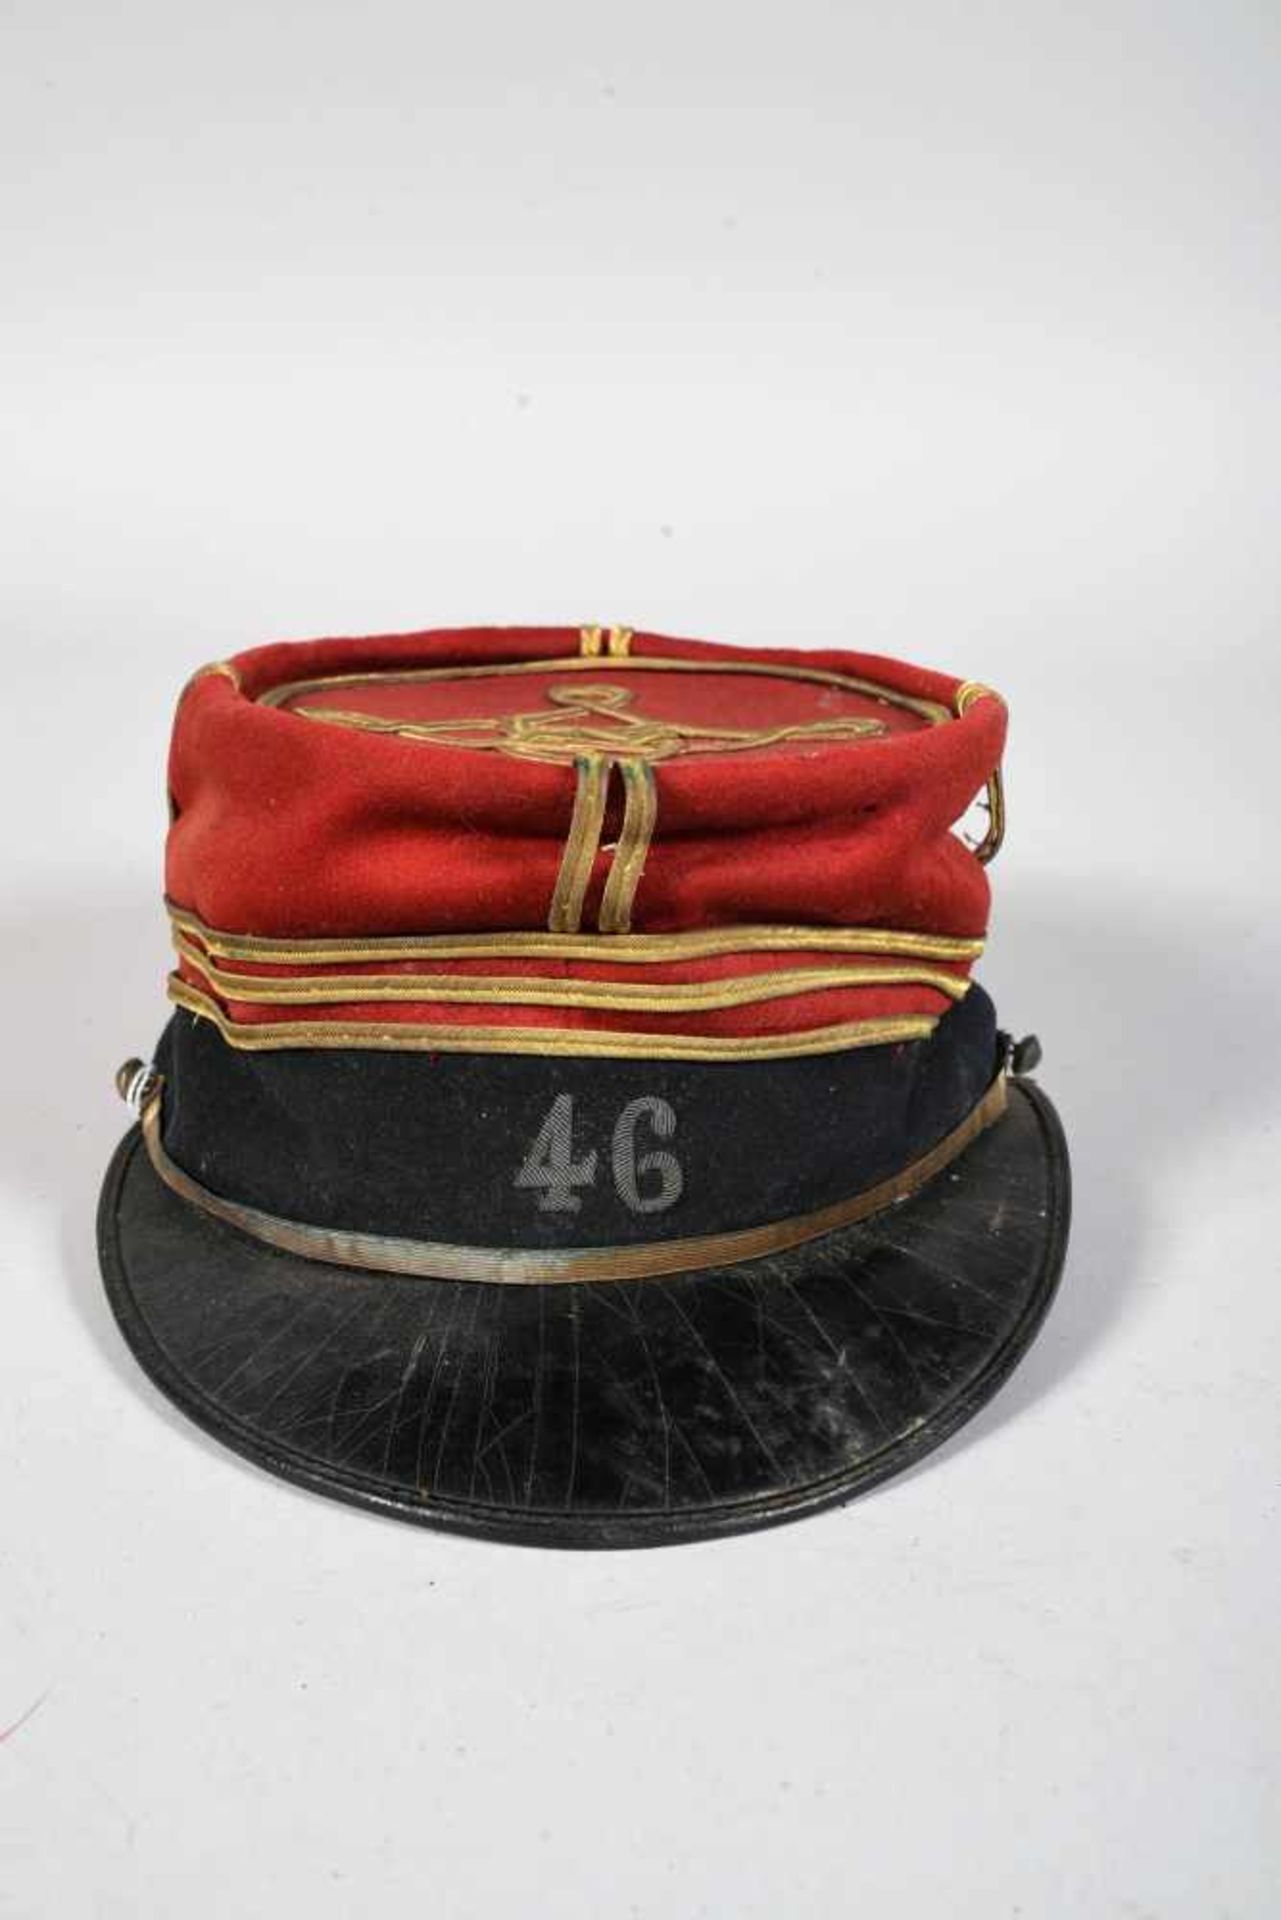 Képi de capitaine du 46e régiment d’infanterie (Paris, Fontainebleau) en drap garance à bandeau